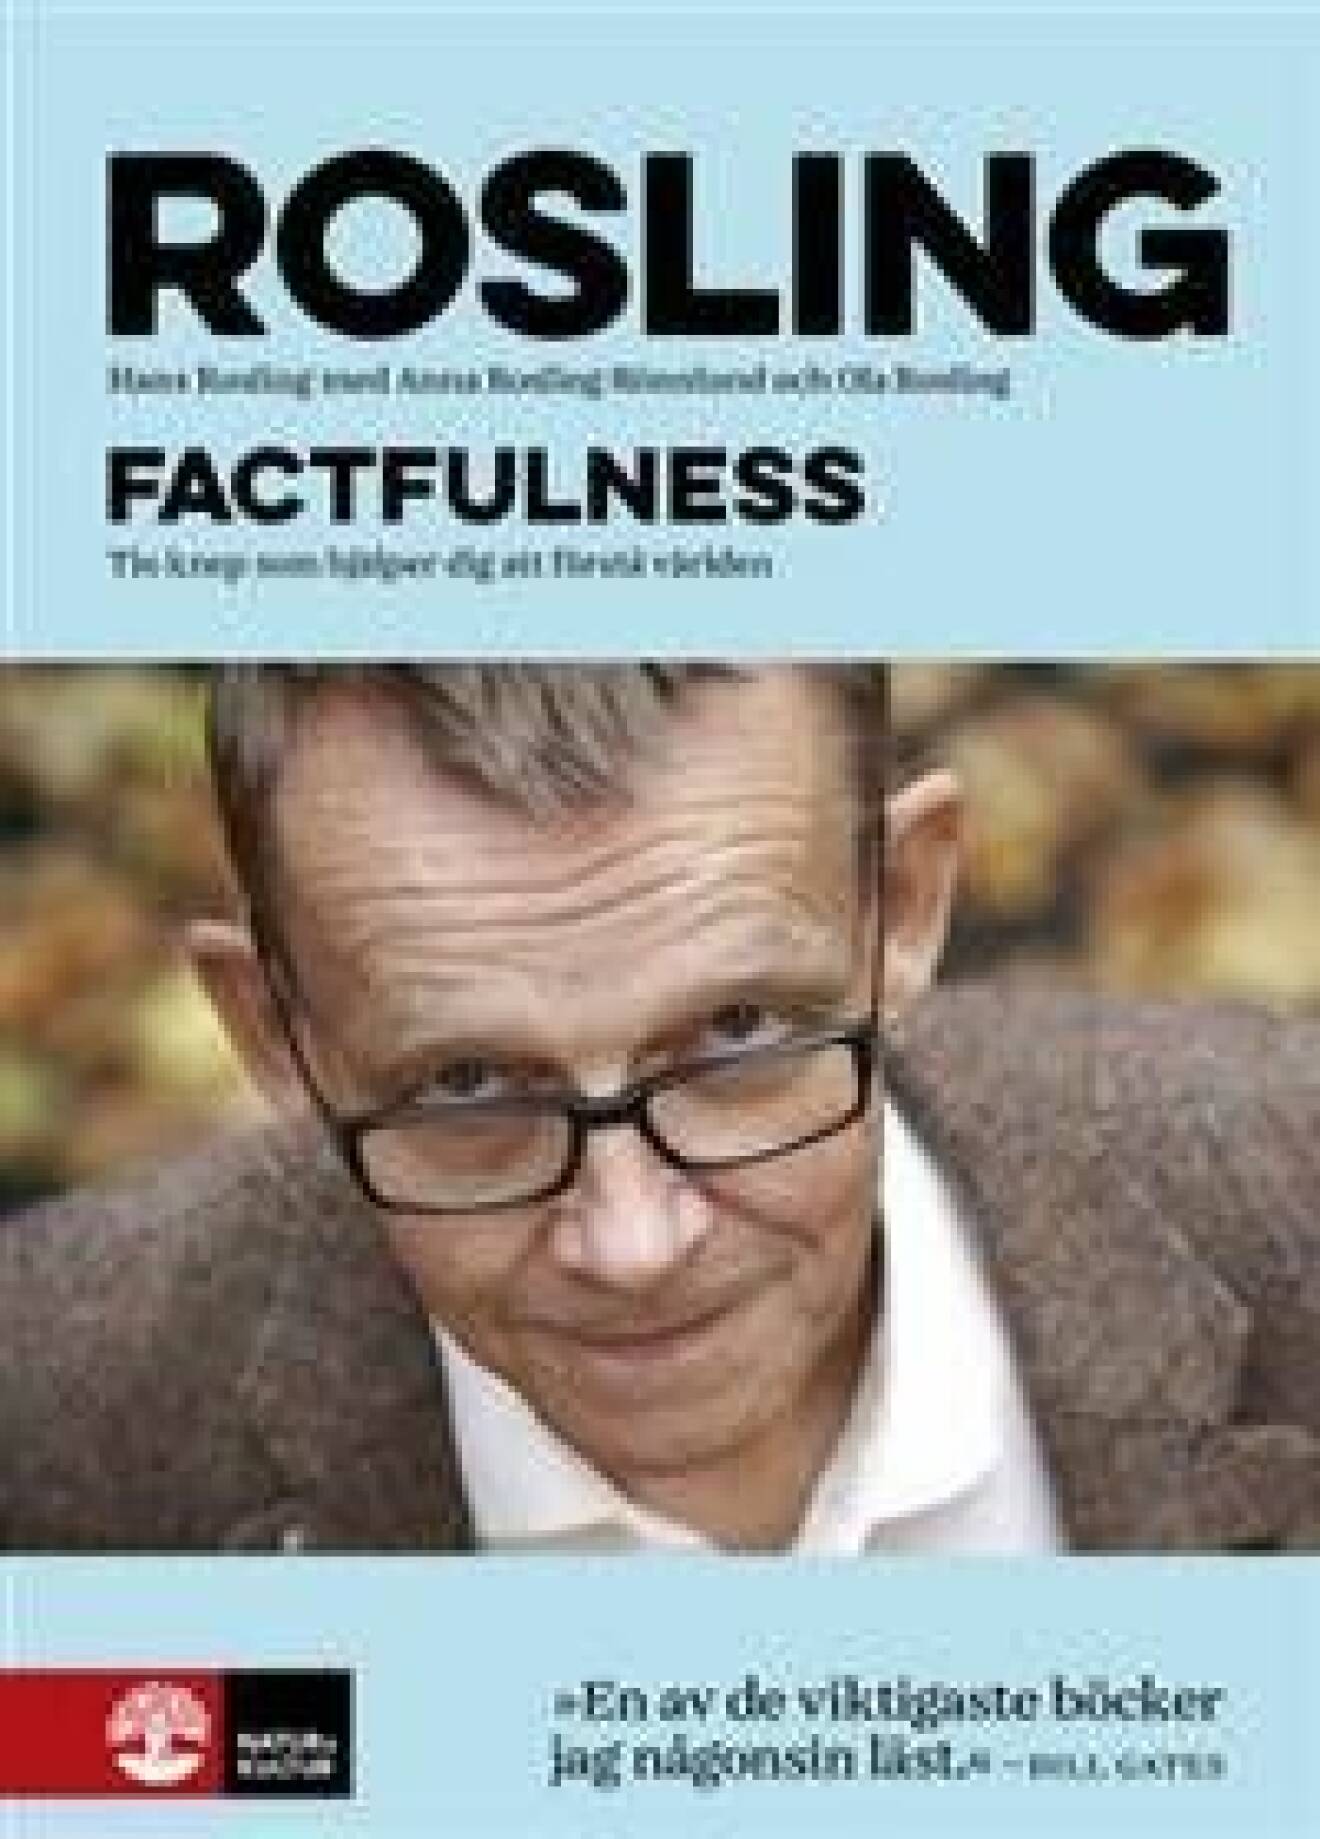 Hans Roslings bok Factfulness